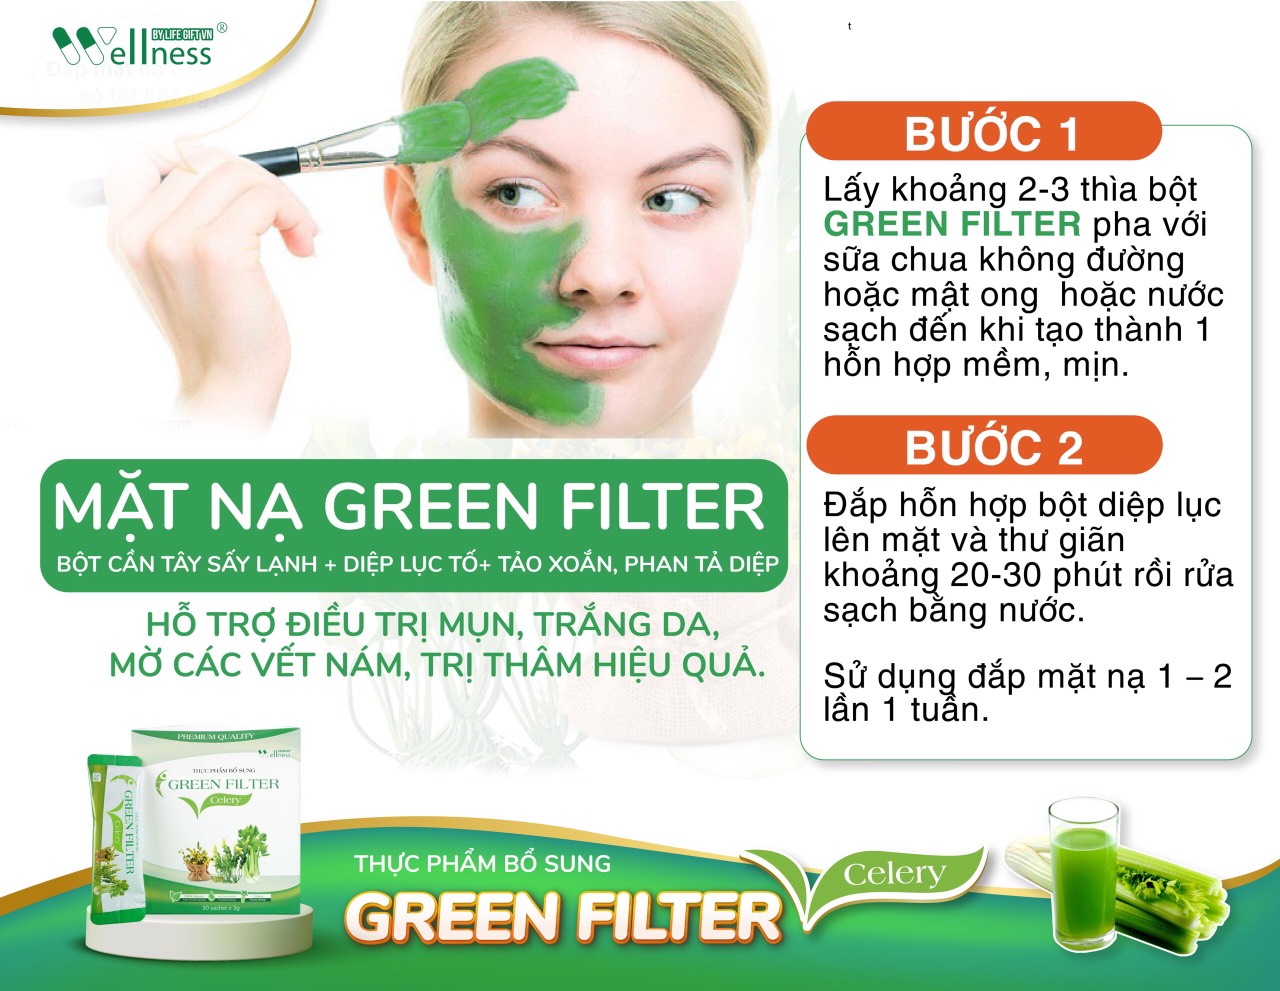 Thực Phẩm Bổ Sung Bột Cần Tây Sấy Lạnh Diệp Lục Green Filter Celery còn có tác dụng làm mặt nạ đắp mặt giúp điều trị mụn, trắng da, làm mờ vết nám, trị thâm hiệu quả